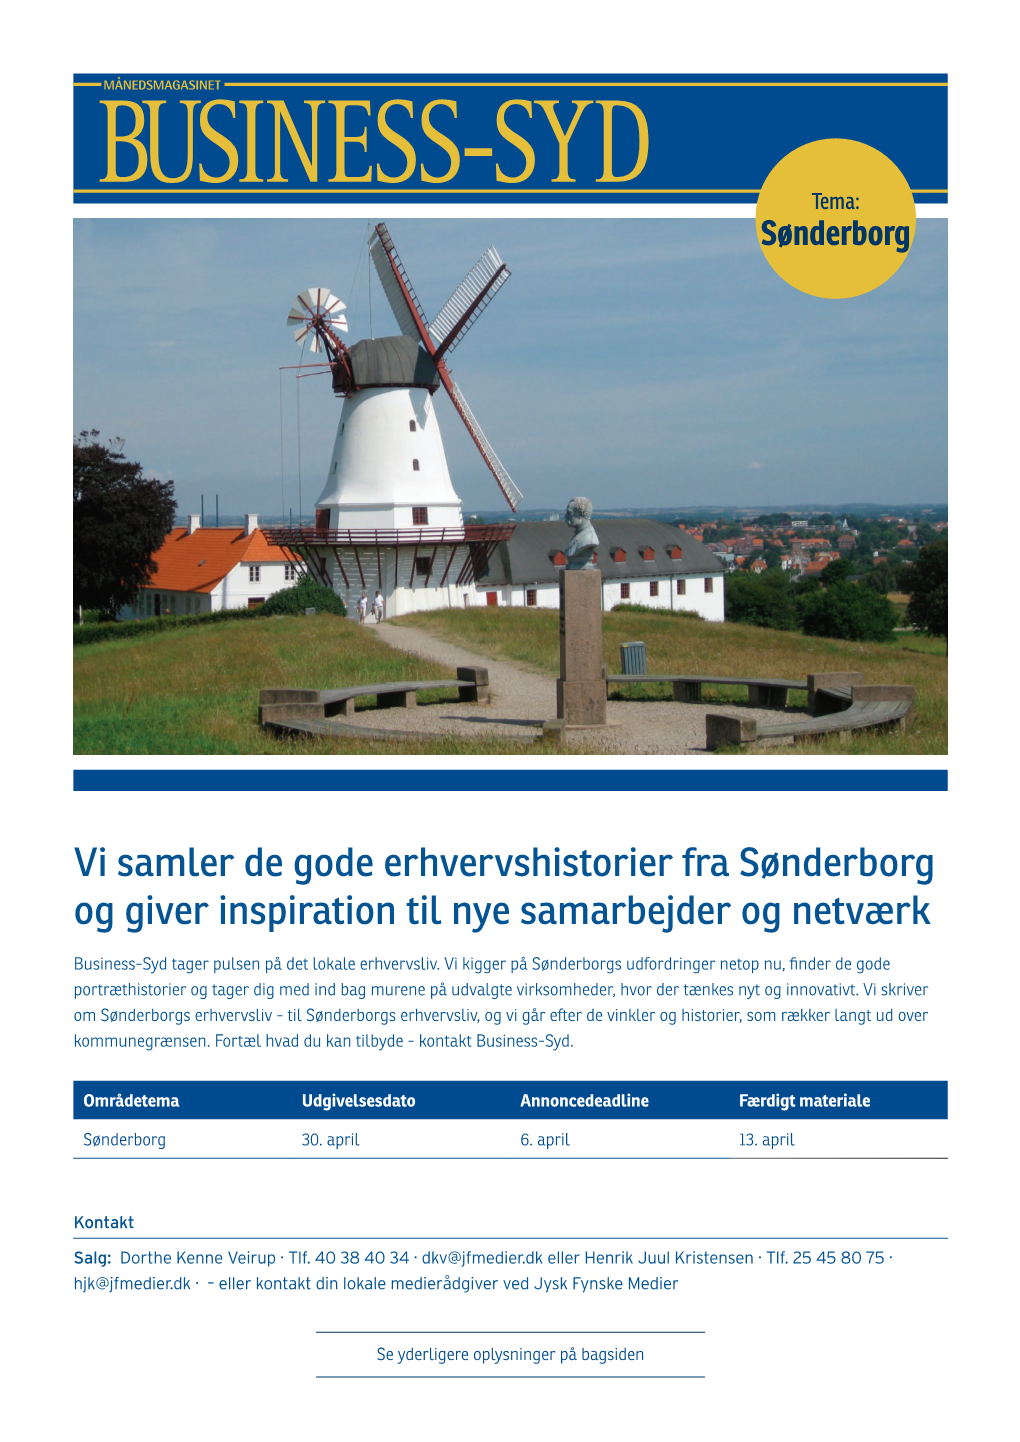 Vi Samler De Gode Erhvervshistorier Fra Sønderborg Og Giver Inspiration Til Nye Samarbejder Og Netværk